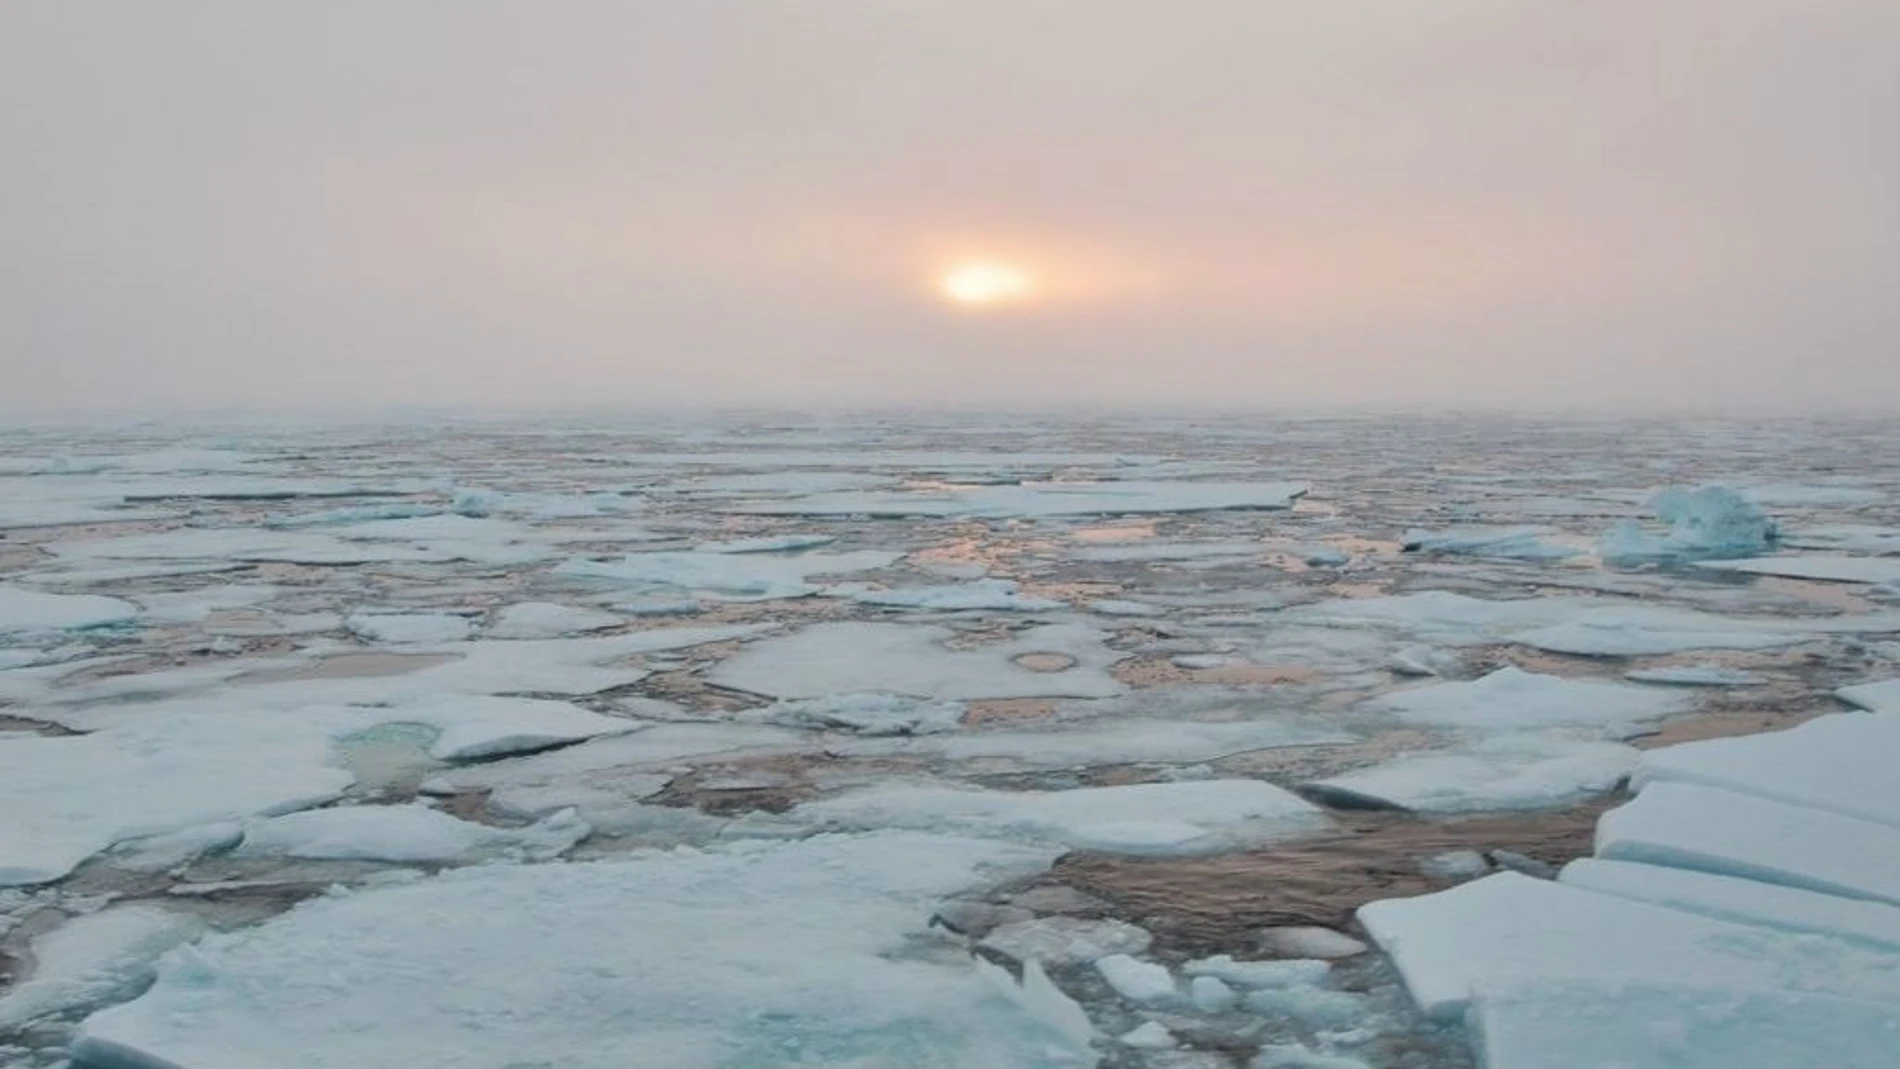 Amanecer en el horizonte de hielo en el Océano Ártico occidental